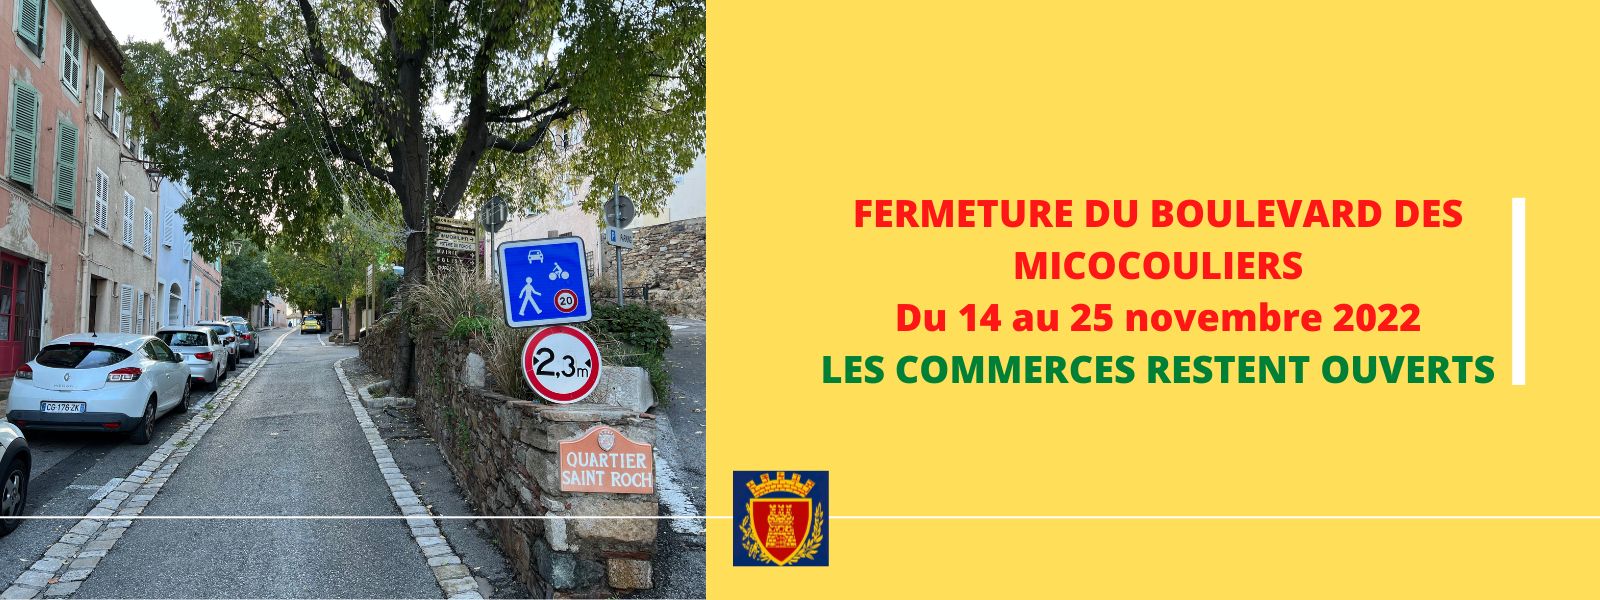 Du 14 au 25 novembre 2022 : fermeture du Boulevard des micocouliers 